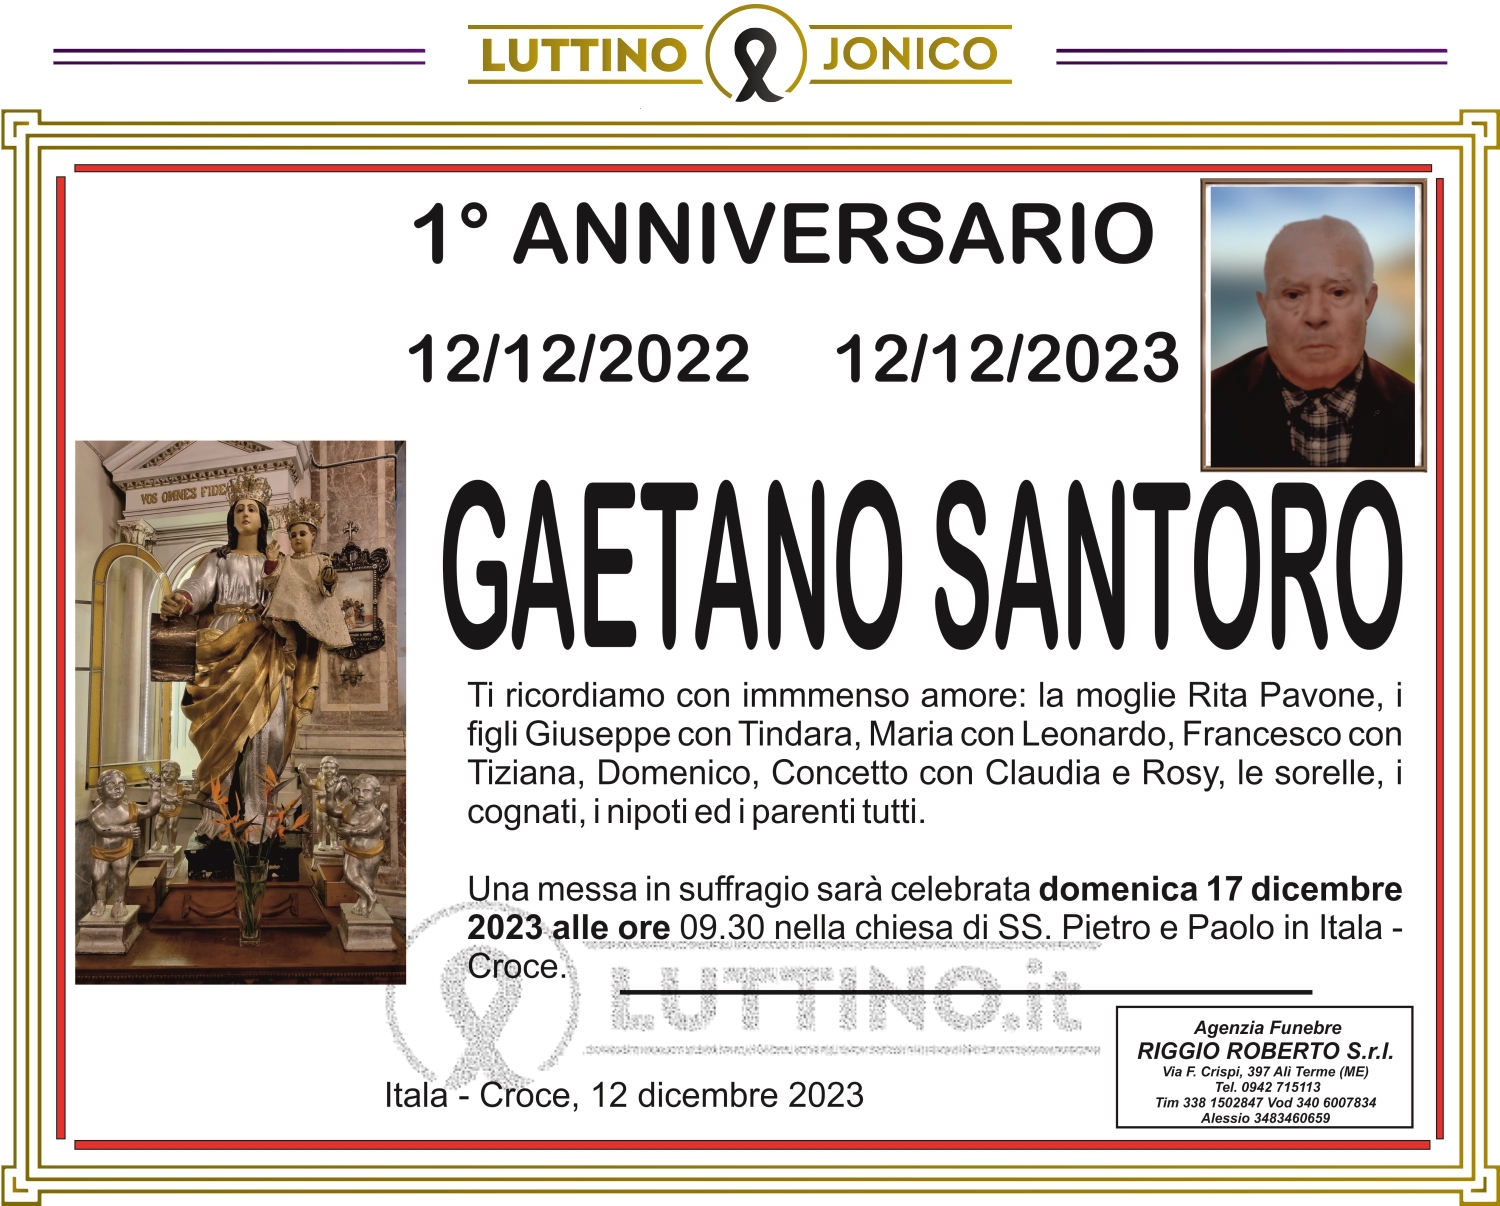 Gaetano Santoro